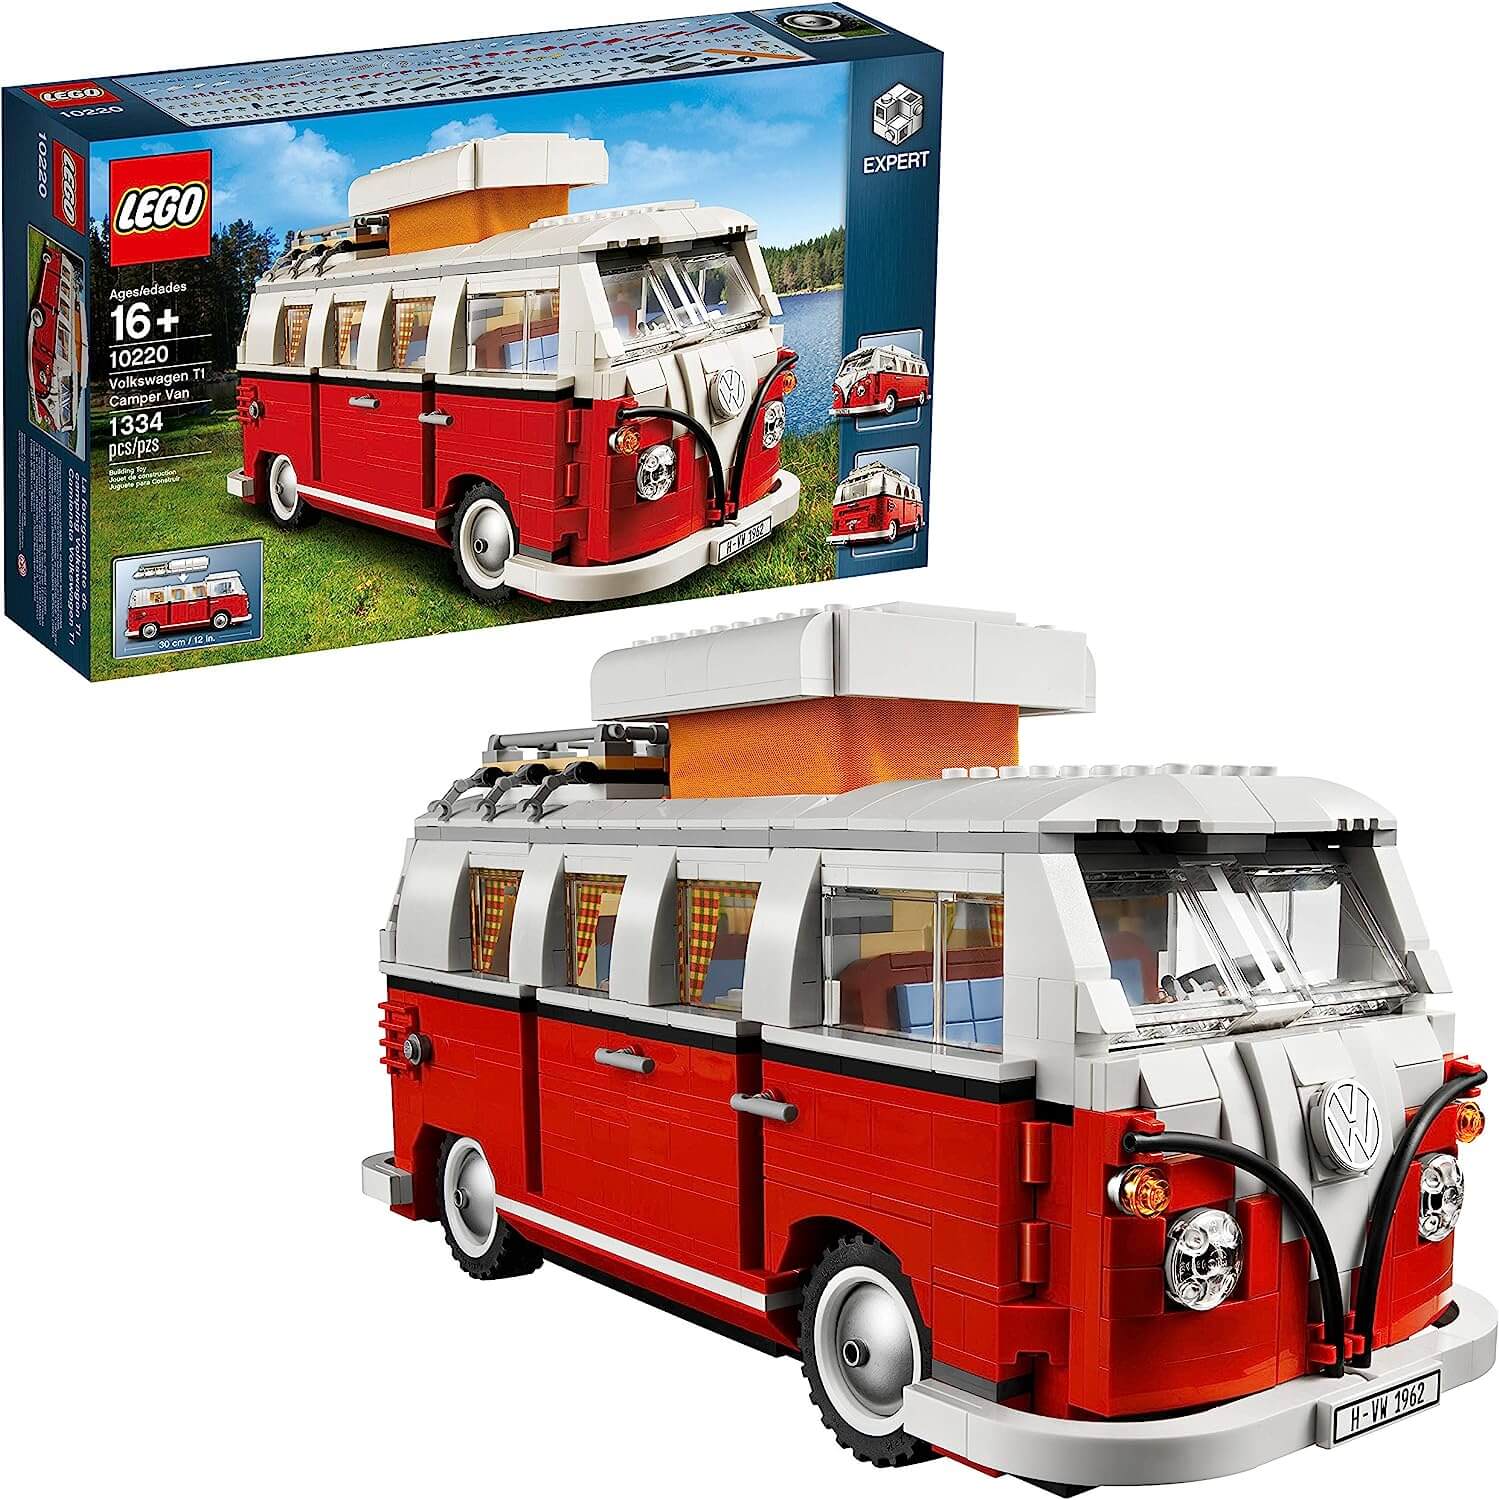 3. LEGO Creator Expert Volkswagen T1 Camper Van (#10220) - $199.99 🚐